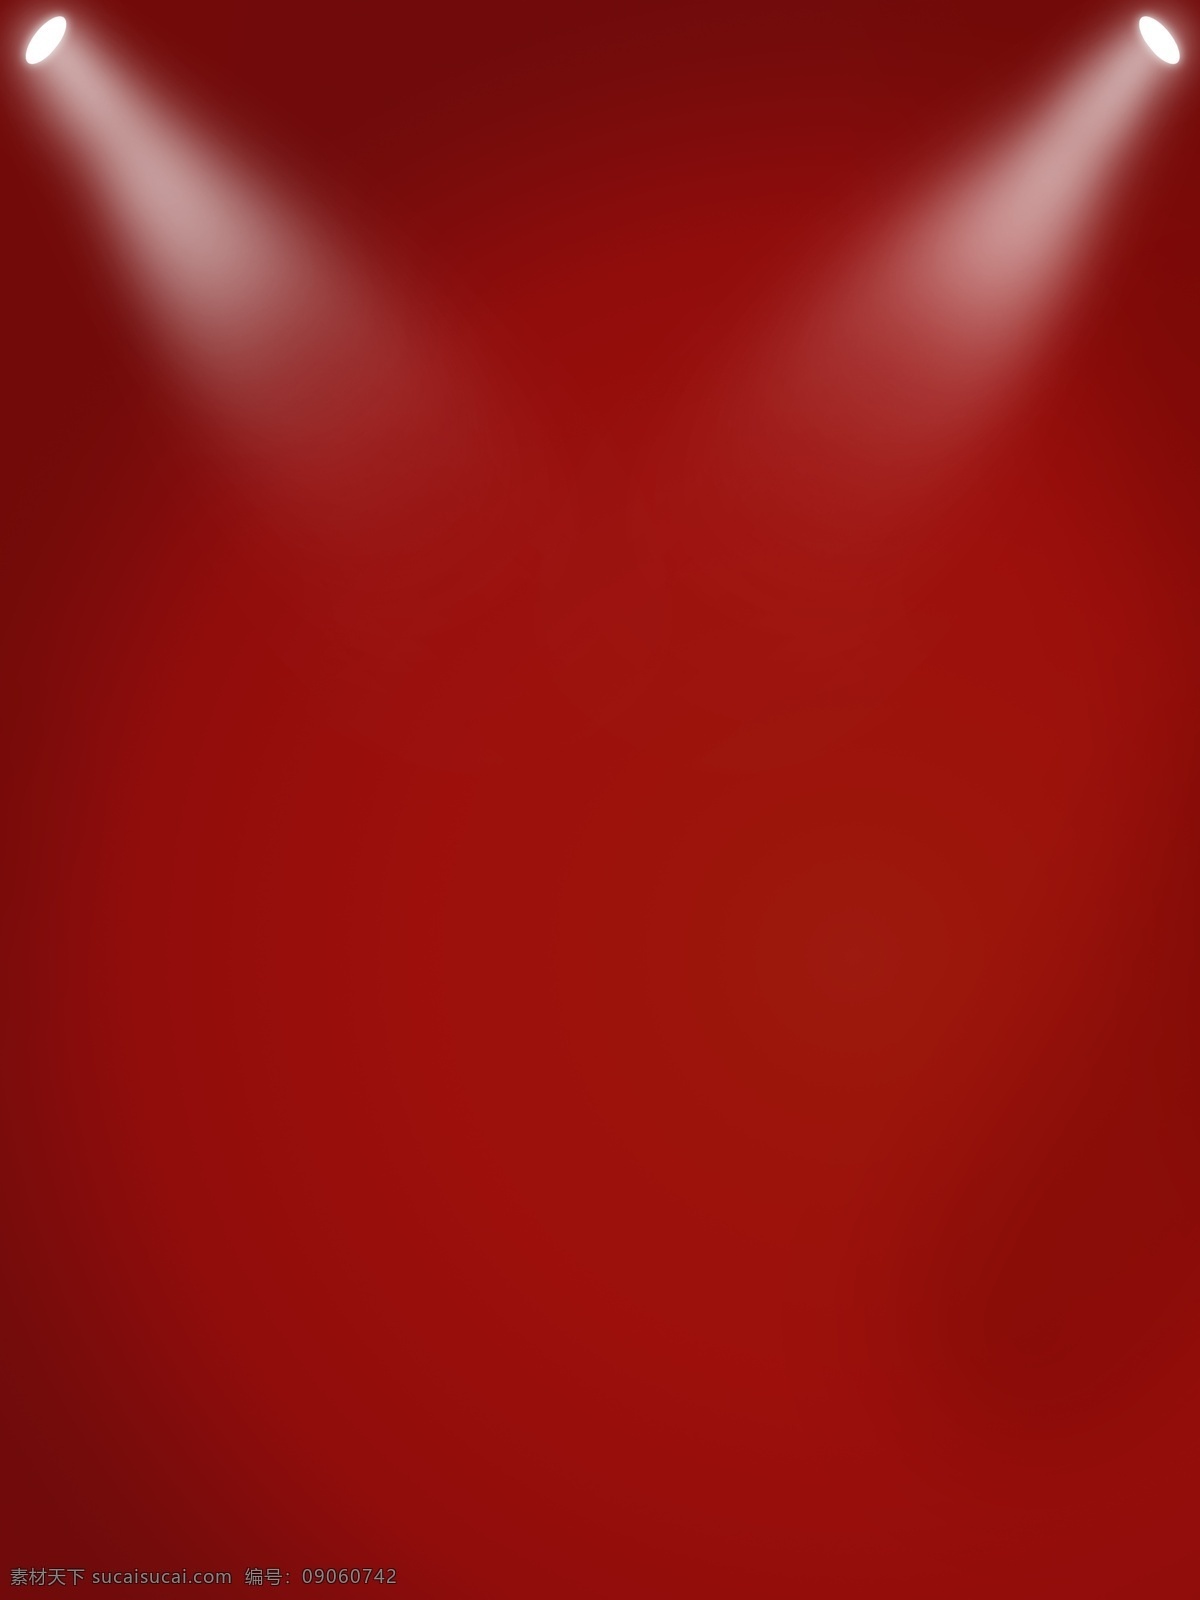 红色 大气 电影节 灯光 背景 媒体 屏幕 娱乐 多媒体 表演 制作 典雅背景设计 中国 古典 复古背景设计 红色大气背景 灯灯背景